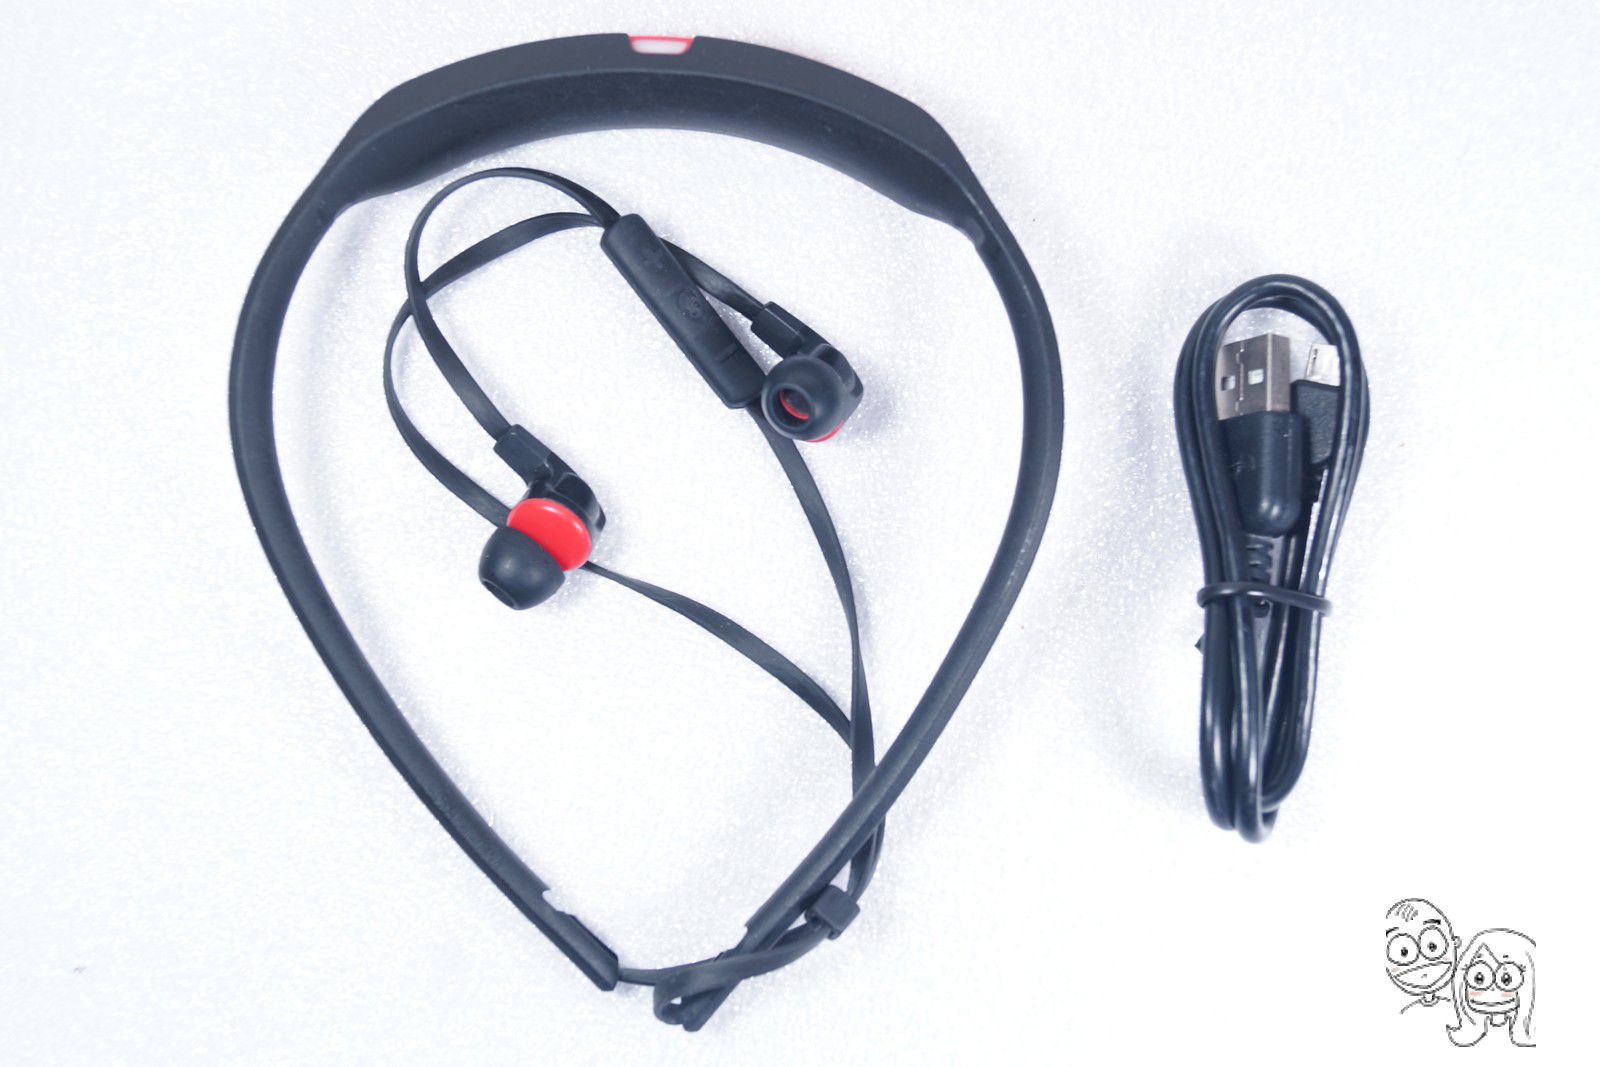 Skullcandy Smokin' Buds 2 In-Ear Bluetooth Wireless Earbuds w/Mic, Black / Red